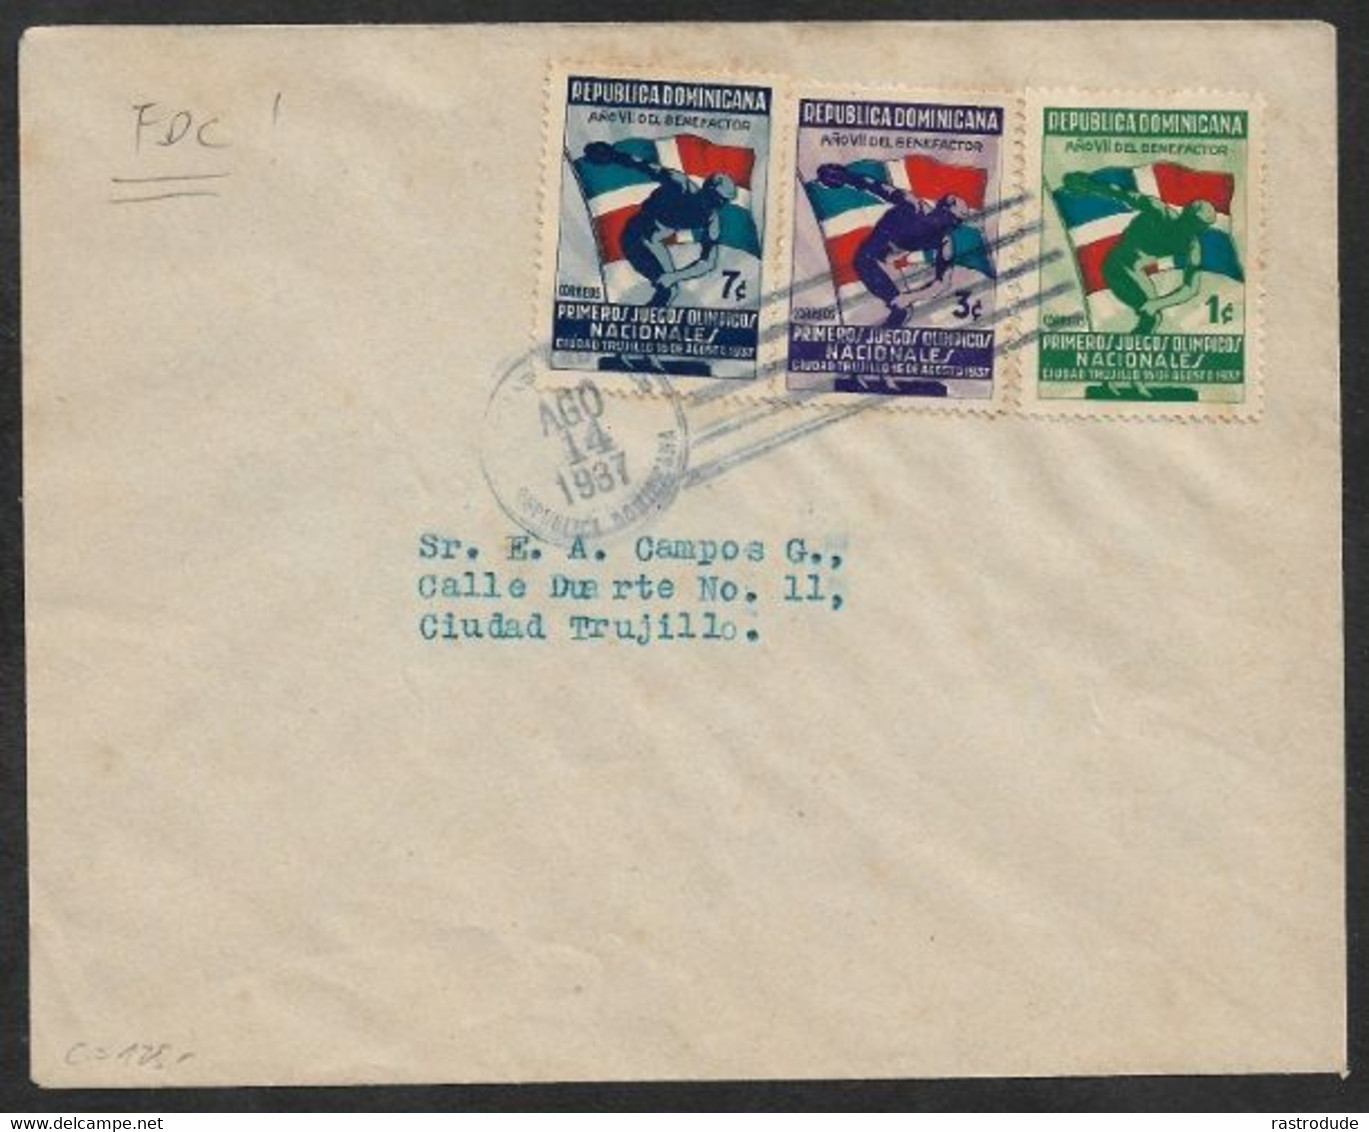 1937 AUG 14 - REPUBLICA DOMINICANA - FDC - PRIMEROS JUEGOS OLIMPICOS NAIONALES 16 AGOSTO 1937 - RARE - República Dominicana